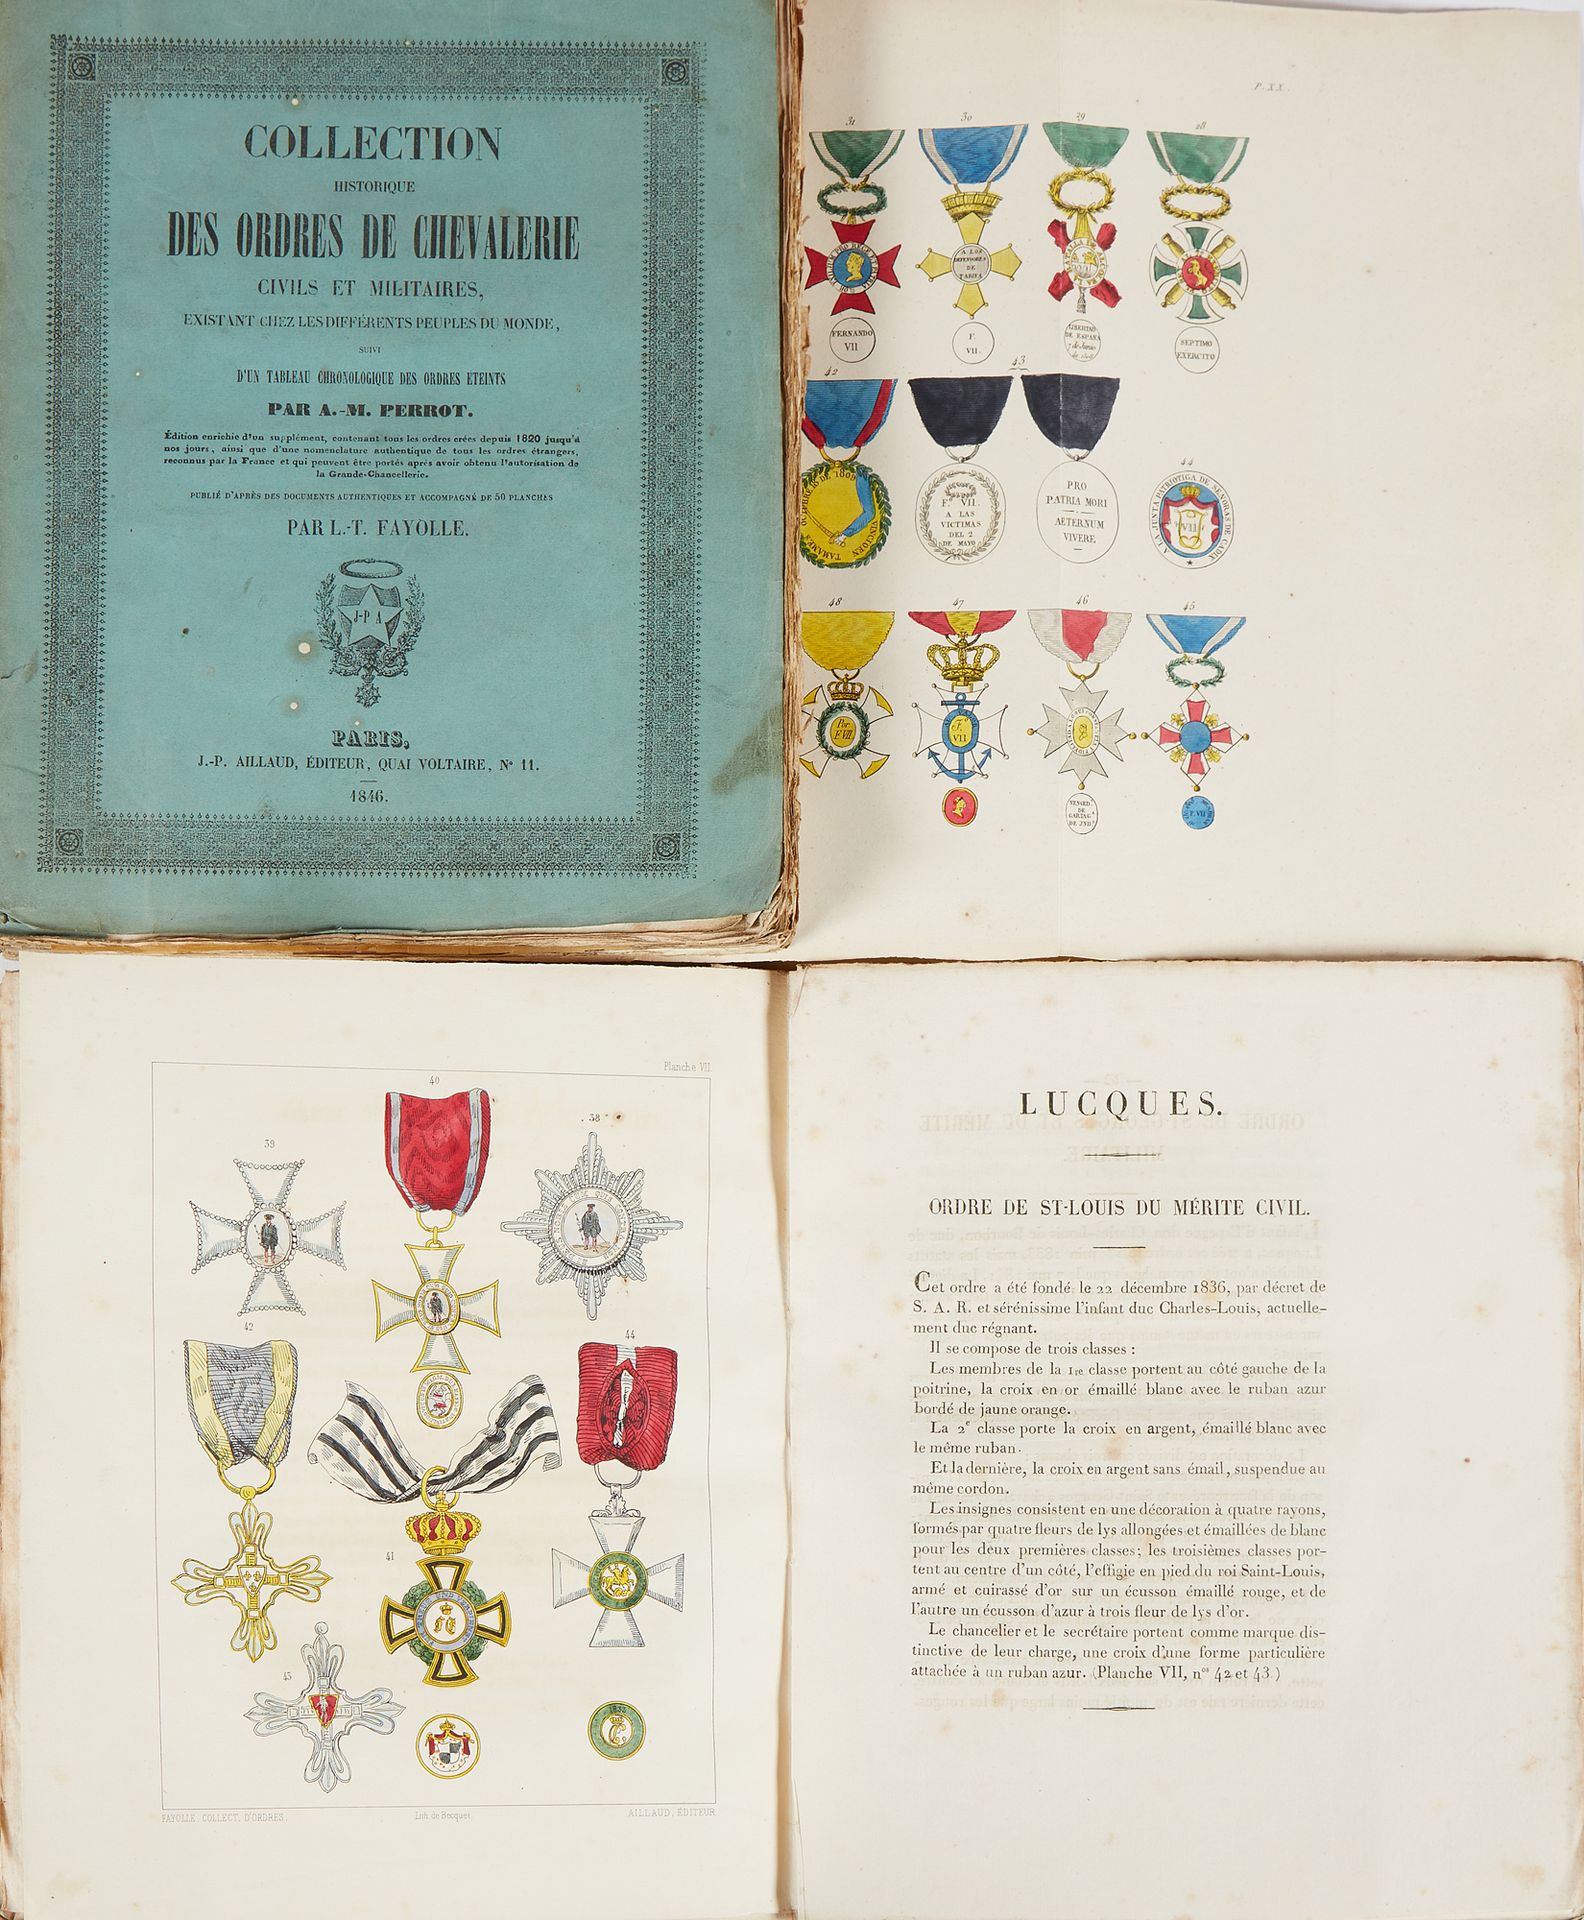 PERROT, A. -M. Collection historique des ordres de chevalerie civils et militair&hellip;